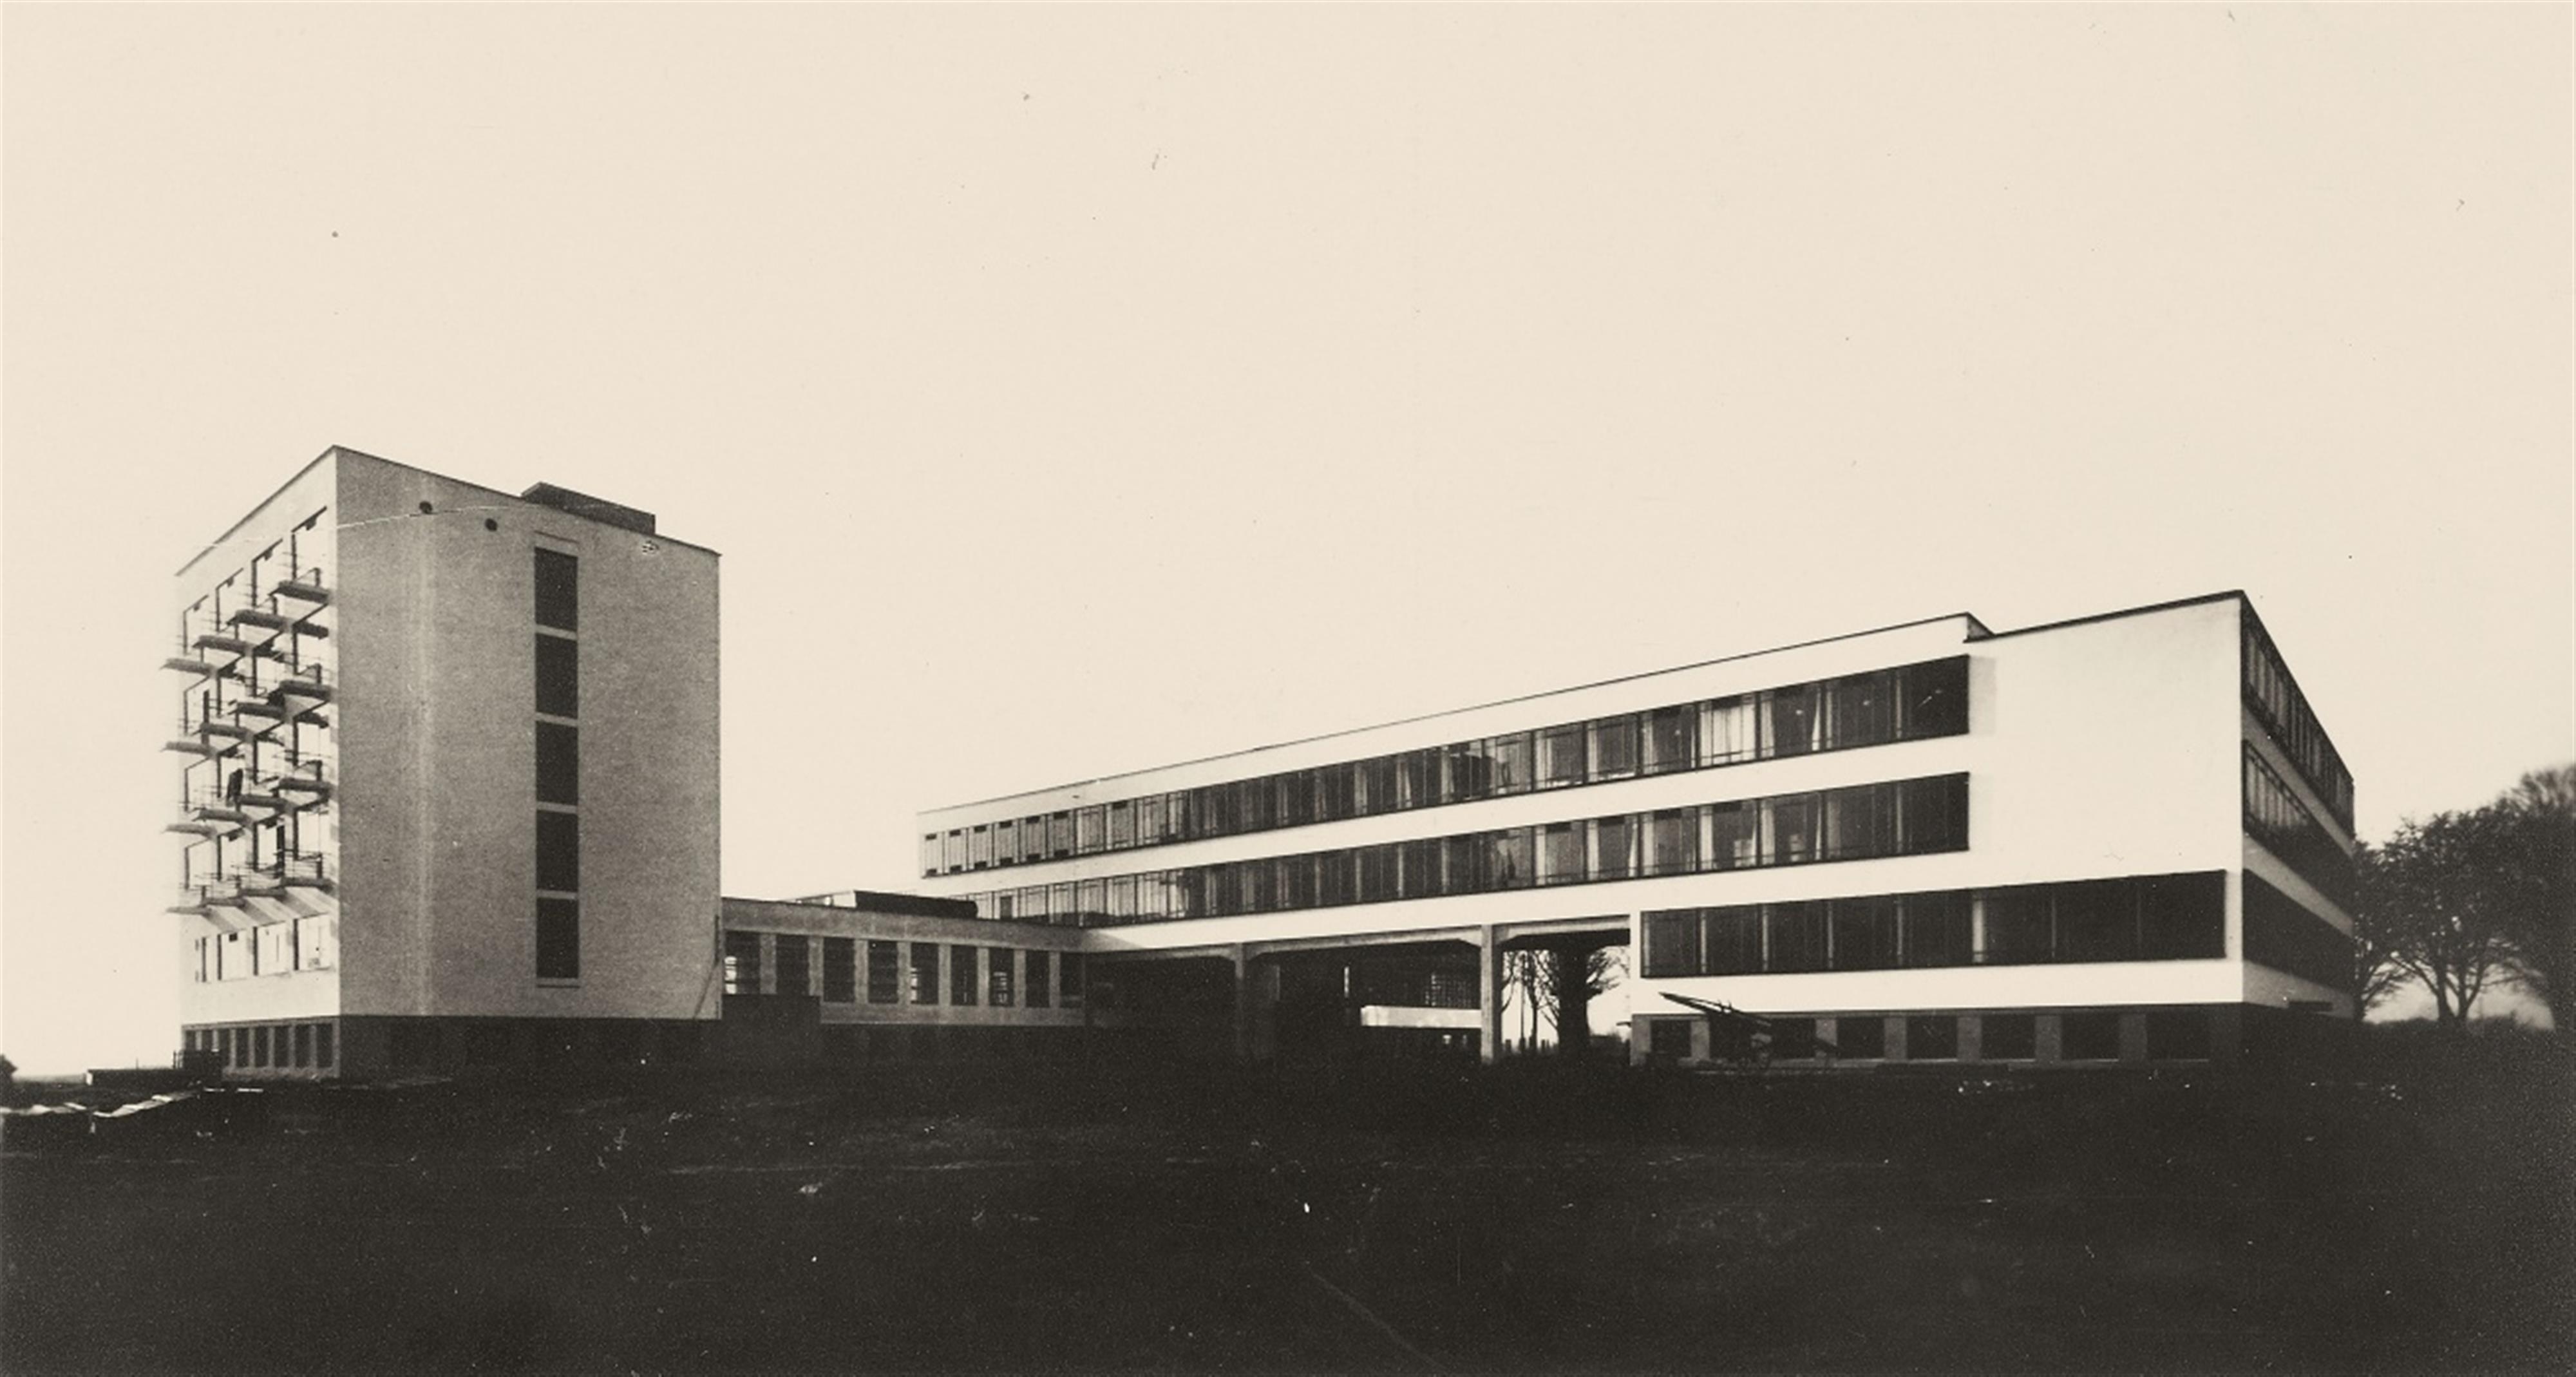 Lucia Moholy
Erich Consemüller - Bauhaus Dessau